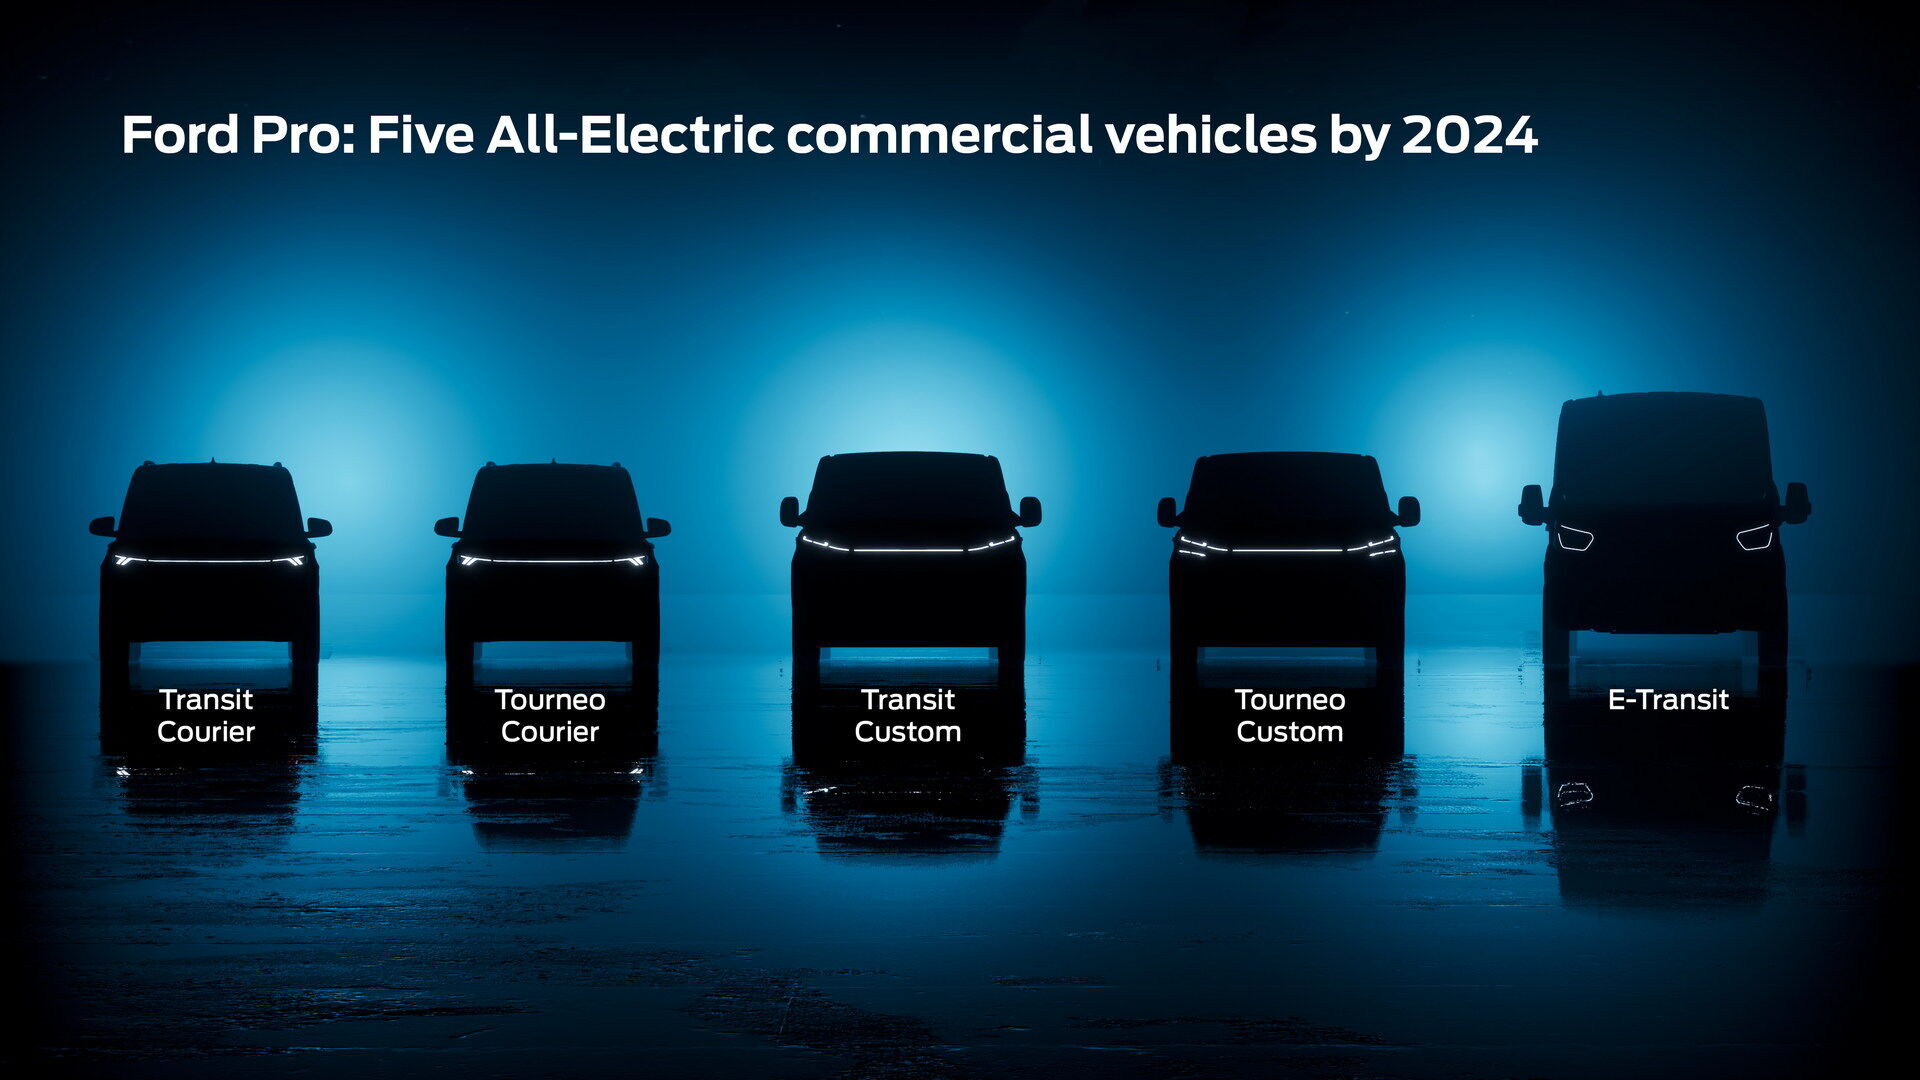 После дебюта электромобиля E-Transit, который уже выпускается подразделением Ford Pro, компания планирует расширить ассортимент "зеленой" продукции